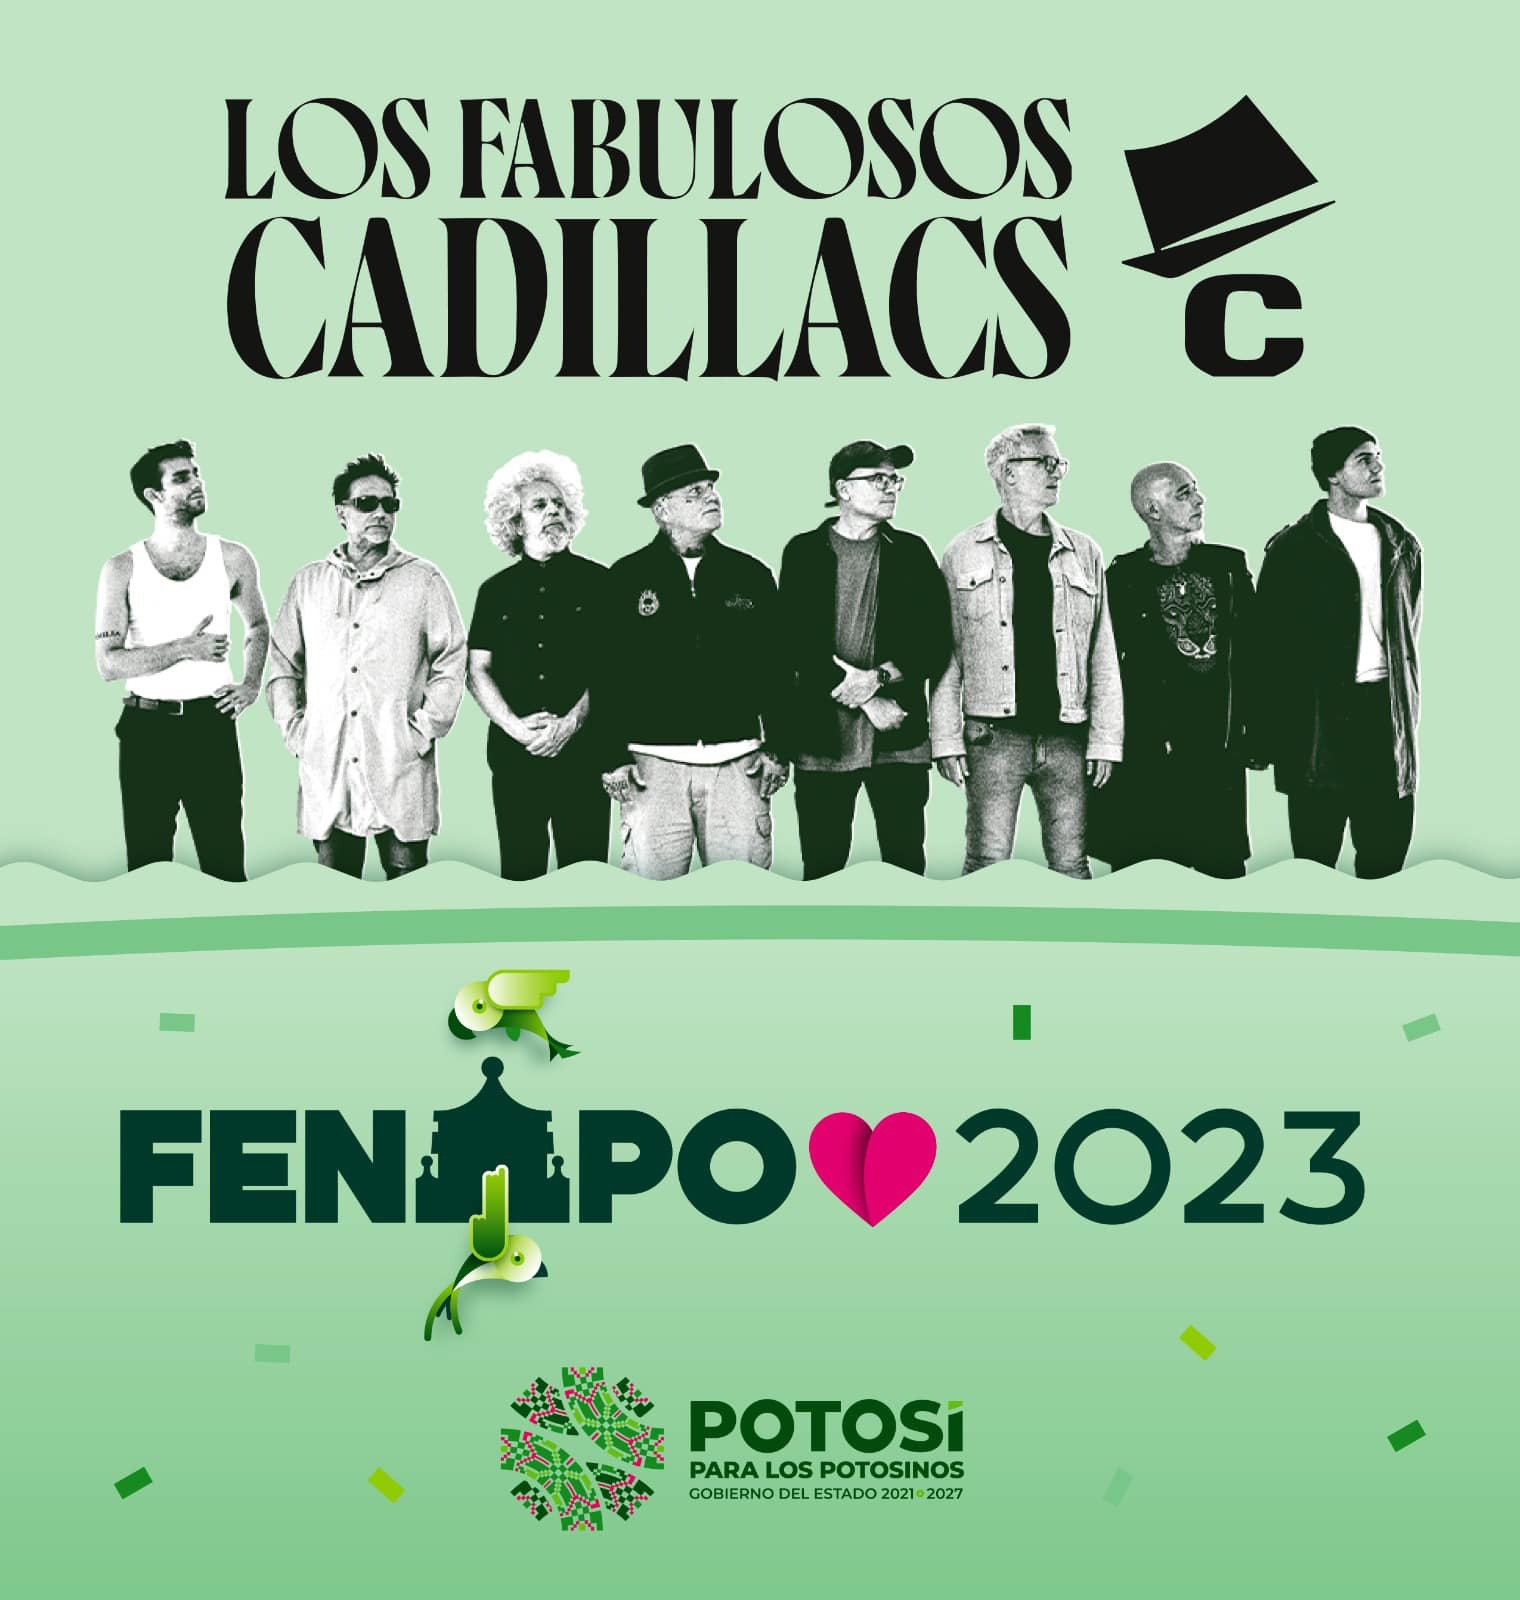 Los Fabulosos Cadillacs llegarán al escenario del Teatro del Pueblo de la Feria Nacional Potosina (Fenapo) edición 2023